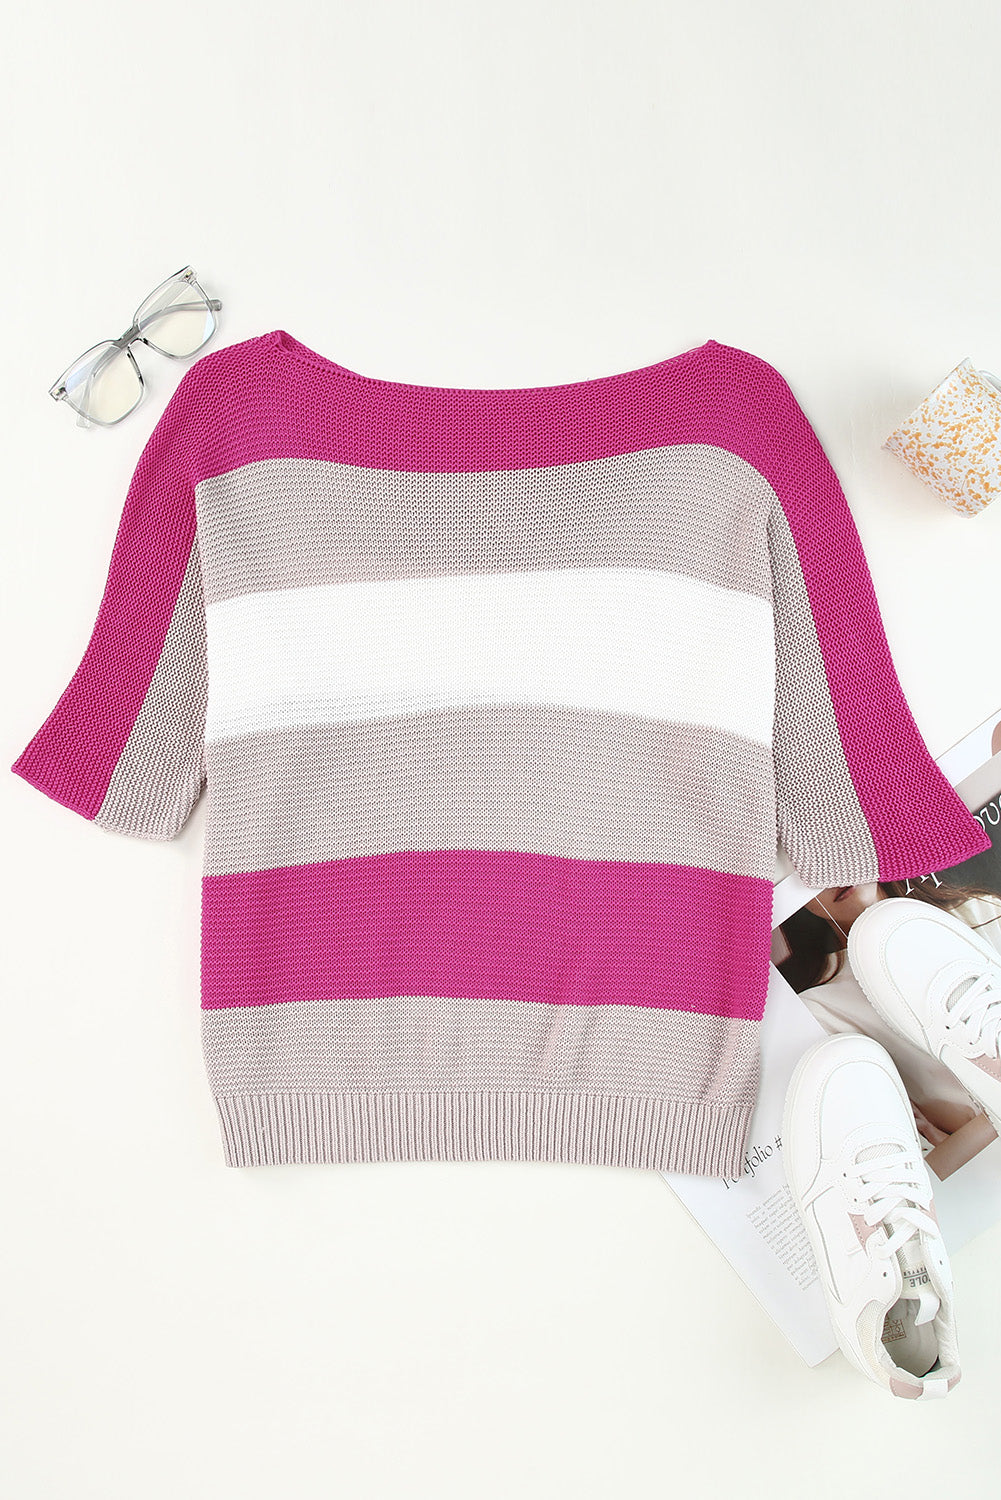 Pleten pulover s pol rokavi z rožnatimi kontrastnimi črtami